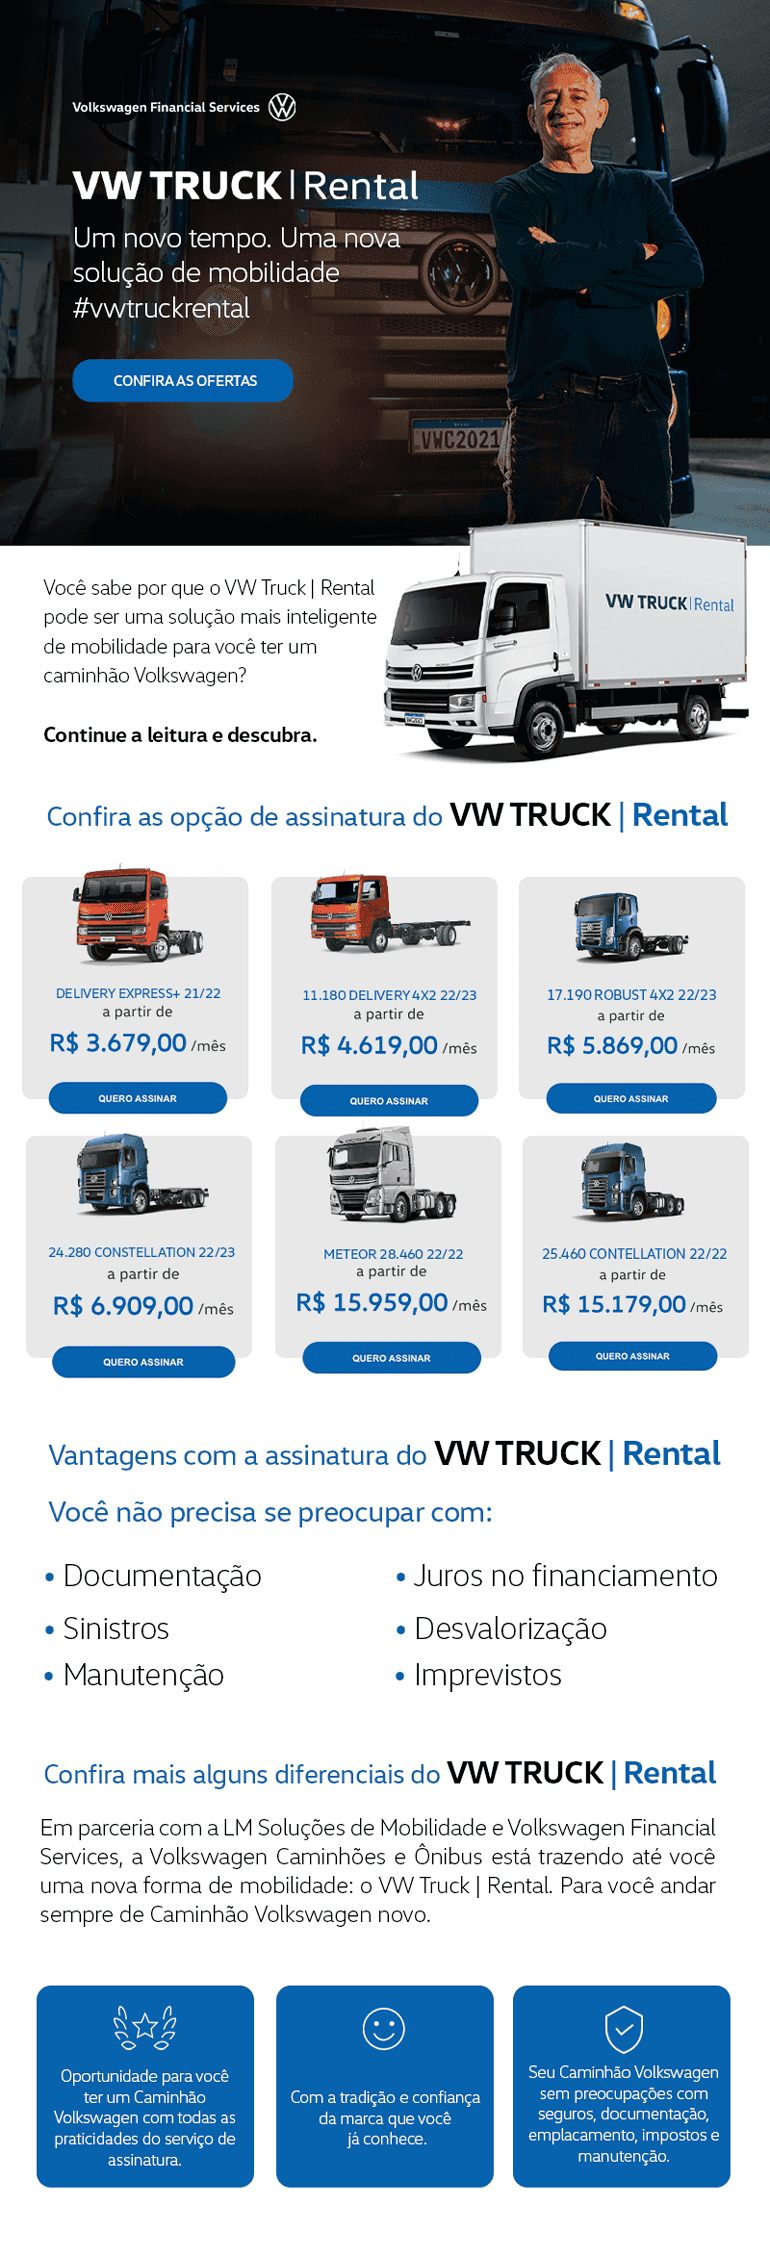 VW Truck | Rental